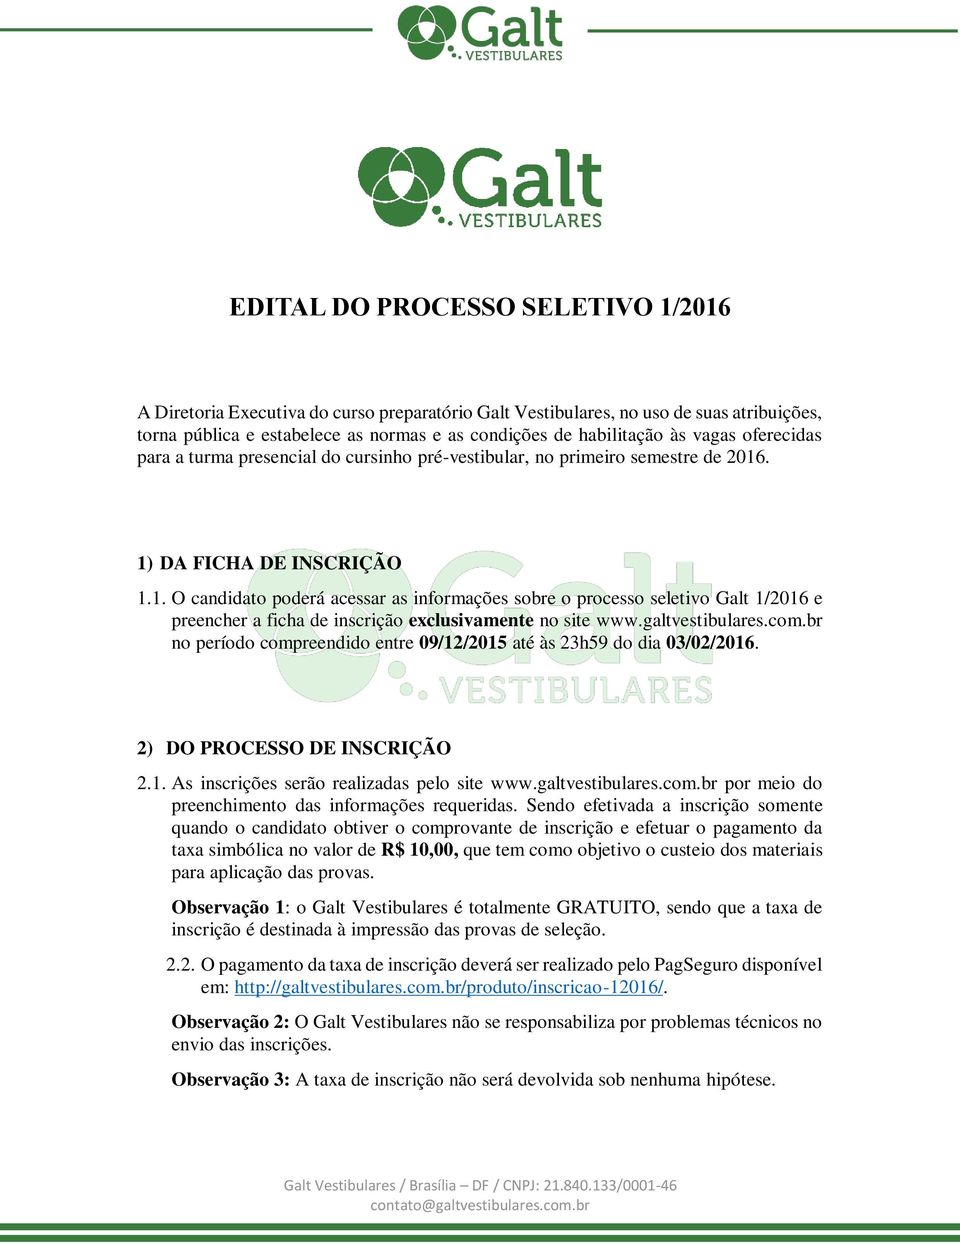 . 1) DA FICHA DE INSCRIÇÃO 1.1. O candidato poderá acessar as informações sobre o processo seletivo Galt 1/2016 e preencher a ficha de inscrição exclusivamente no site www.galtvestibulares.com.